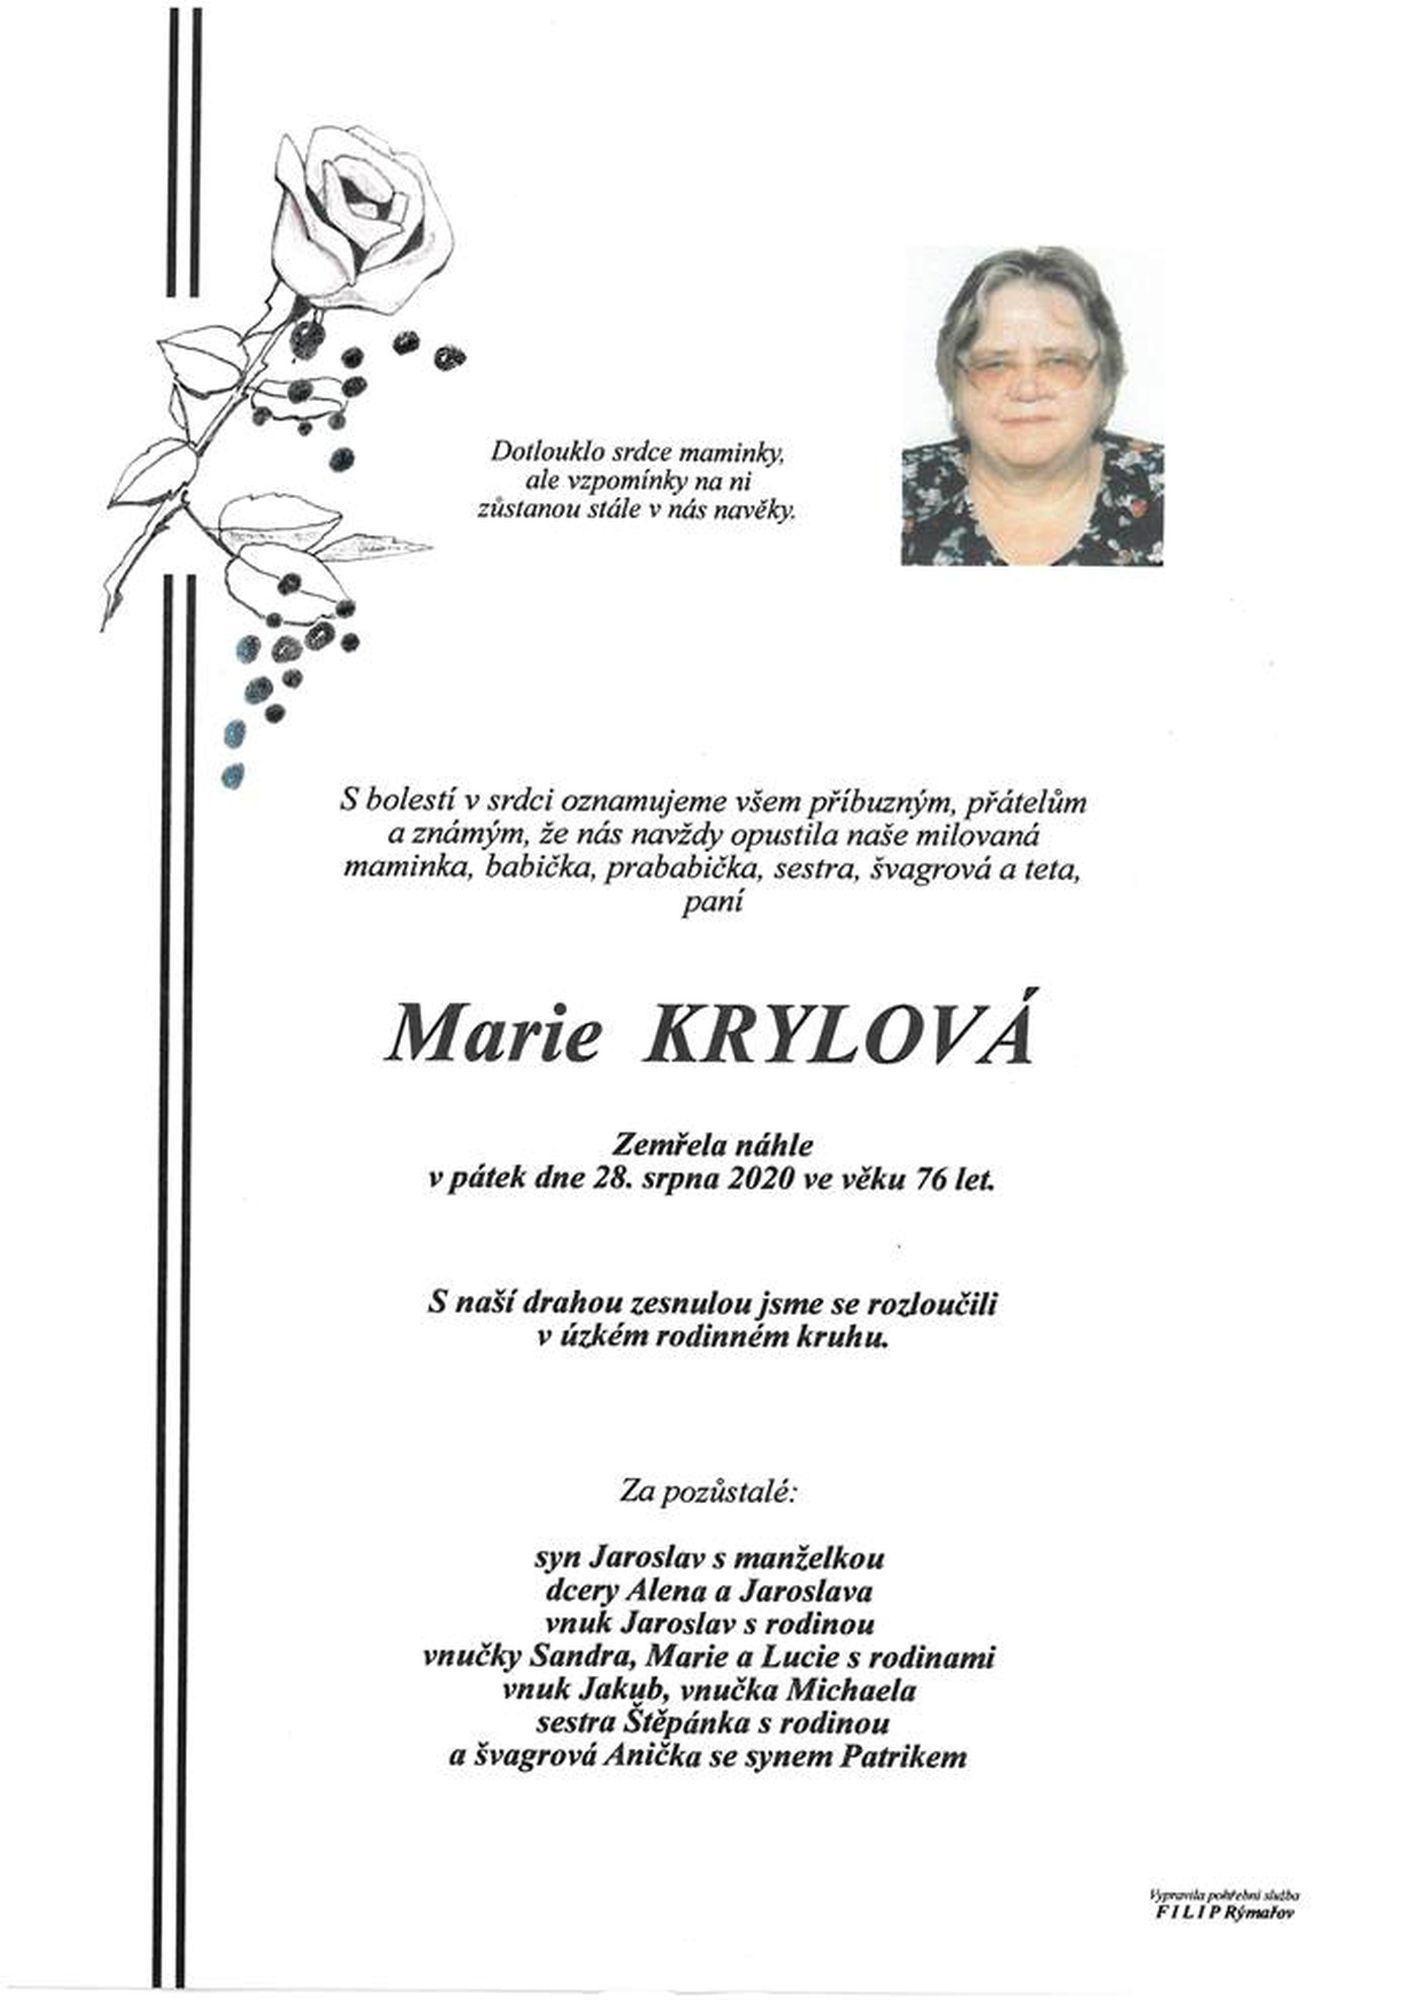 Marie Krylová